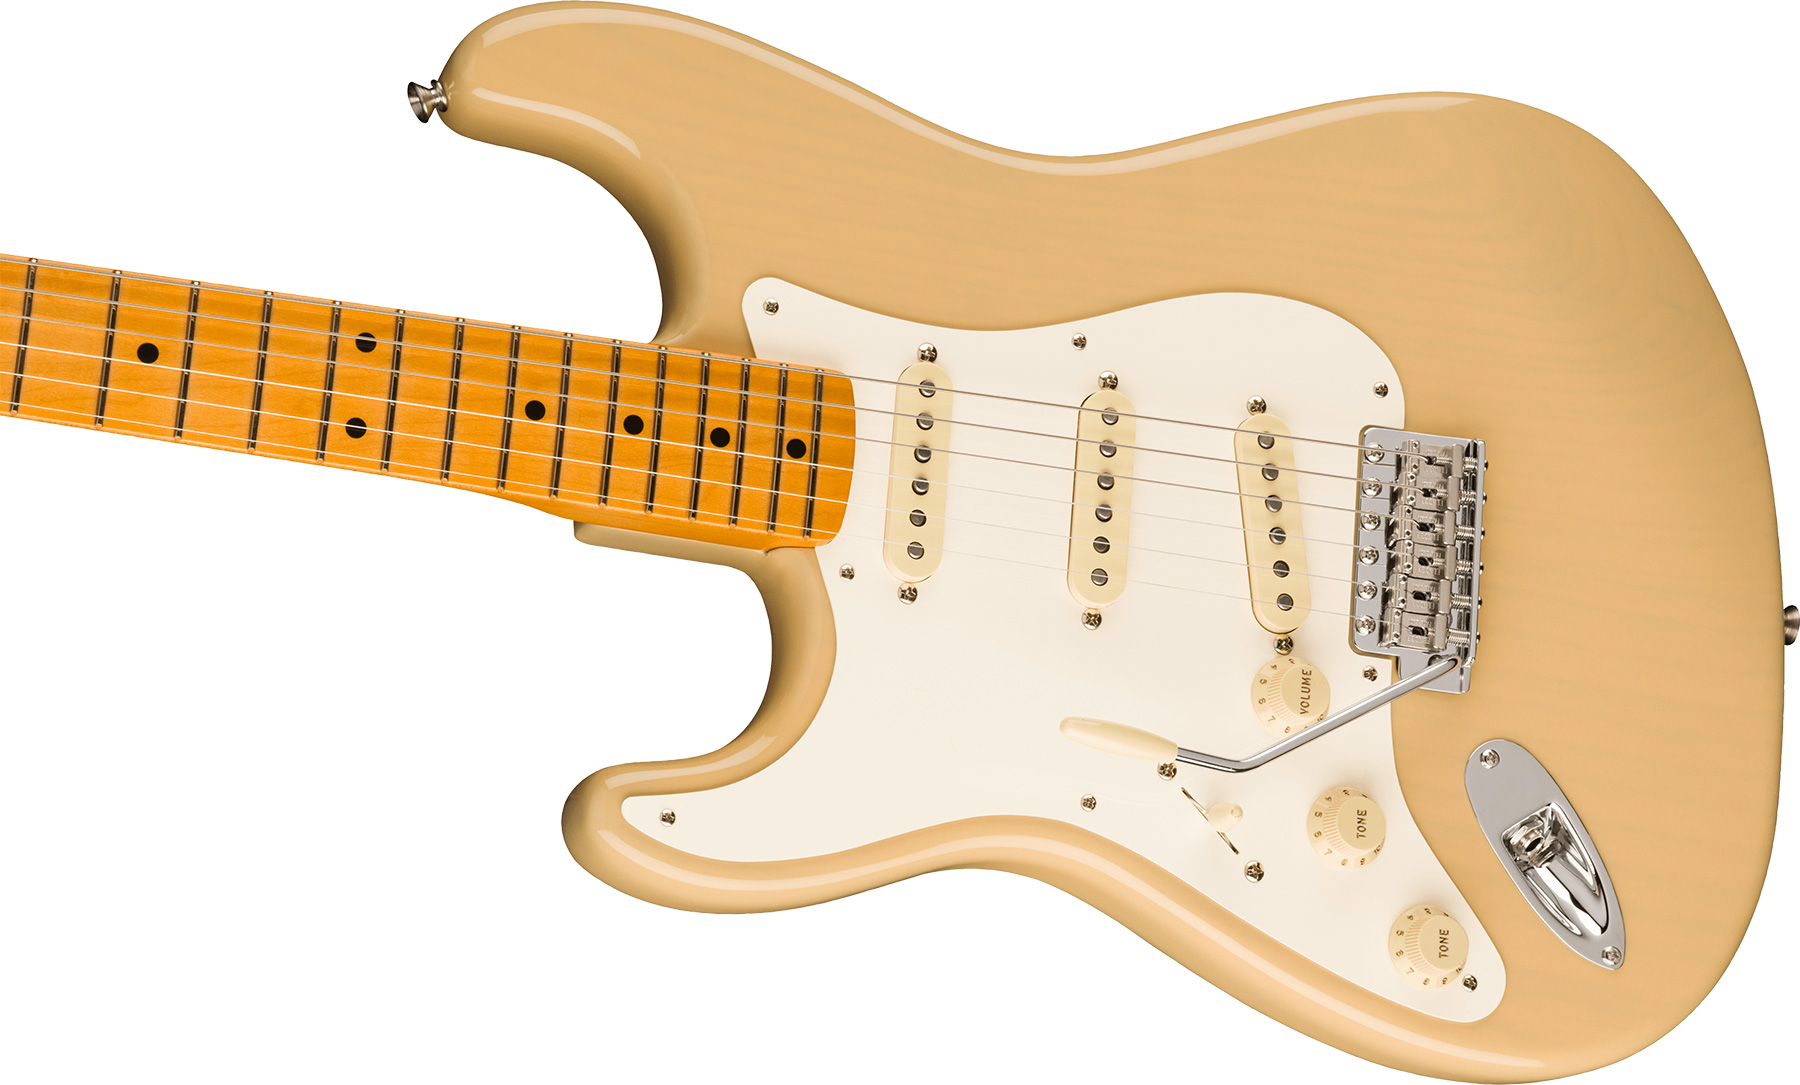 Fender Strat 1957 American Vintage Ii Lh Gaucher Usa 3s Trem Mn - Vintage Blonde - Guitarra electrica para zurdos - Variation 2